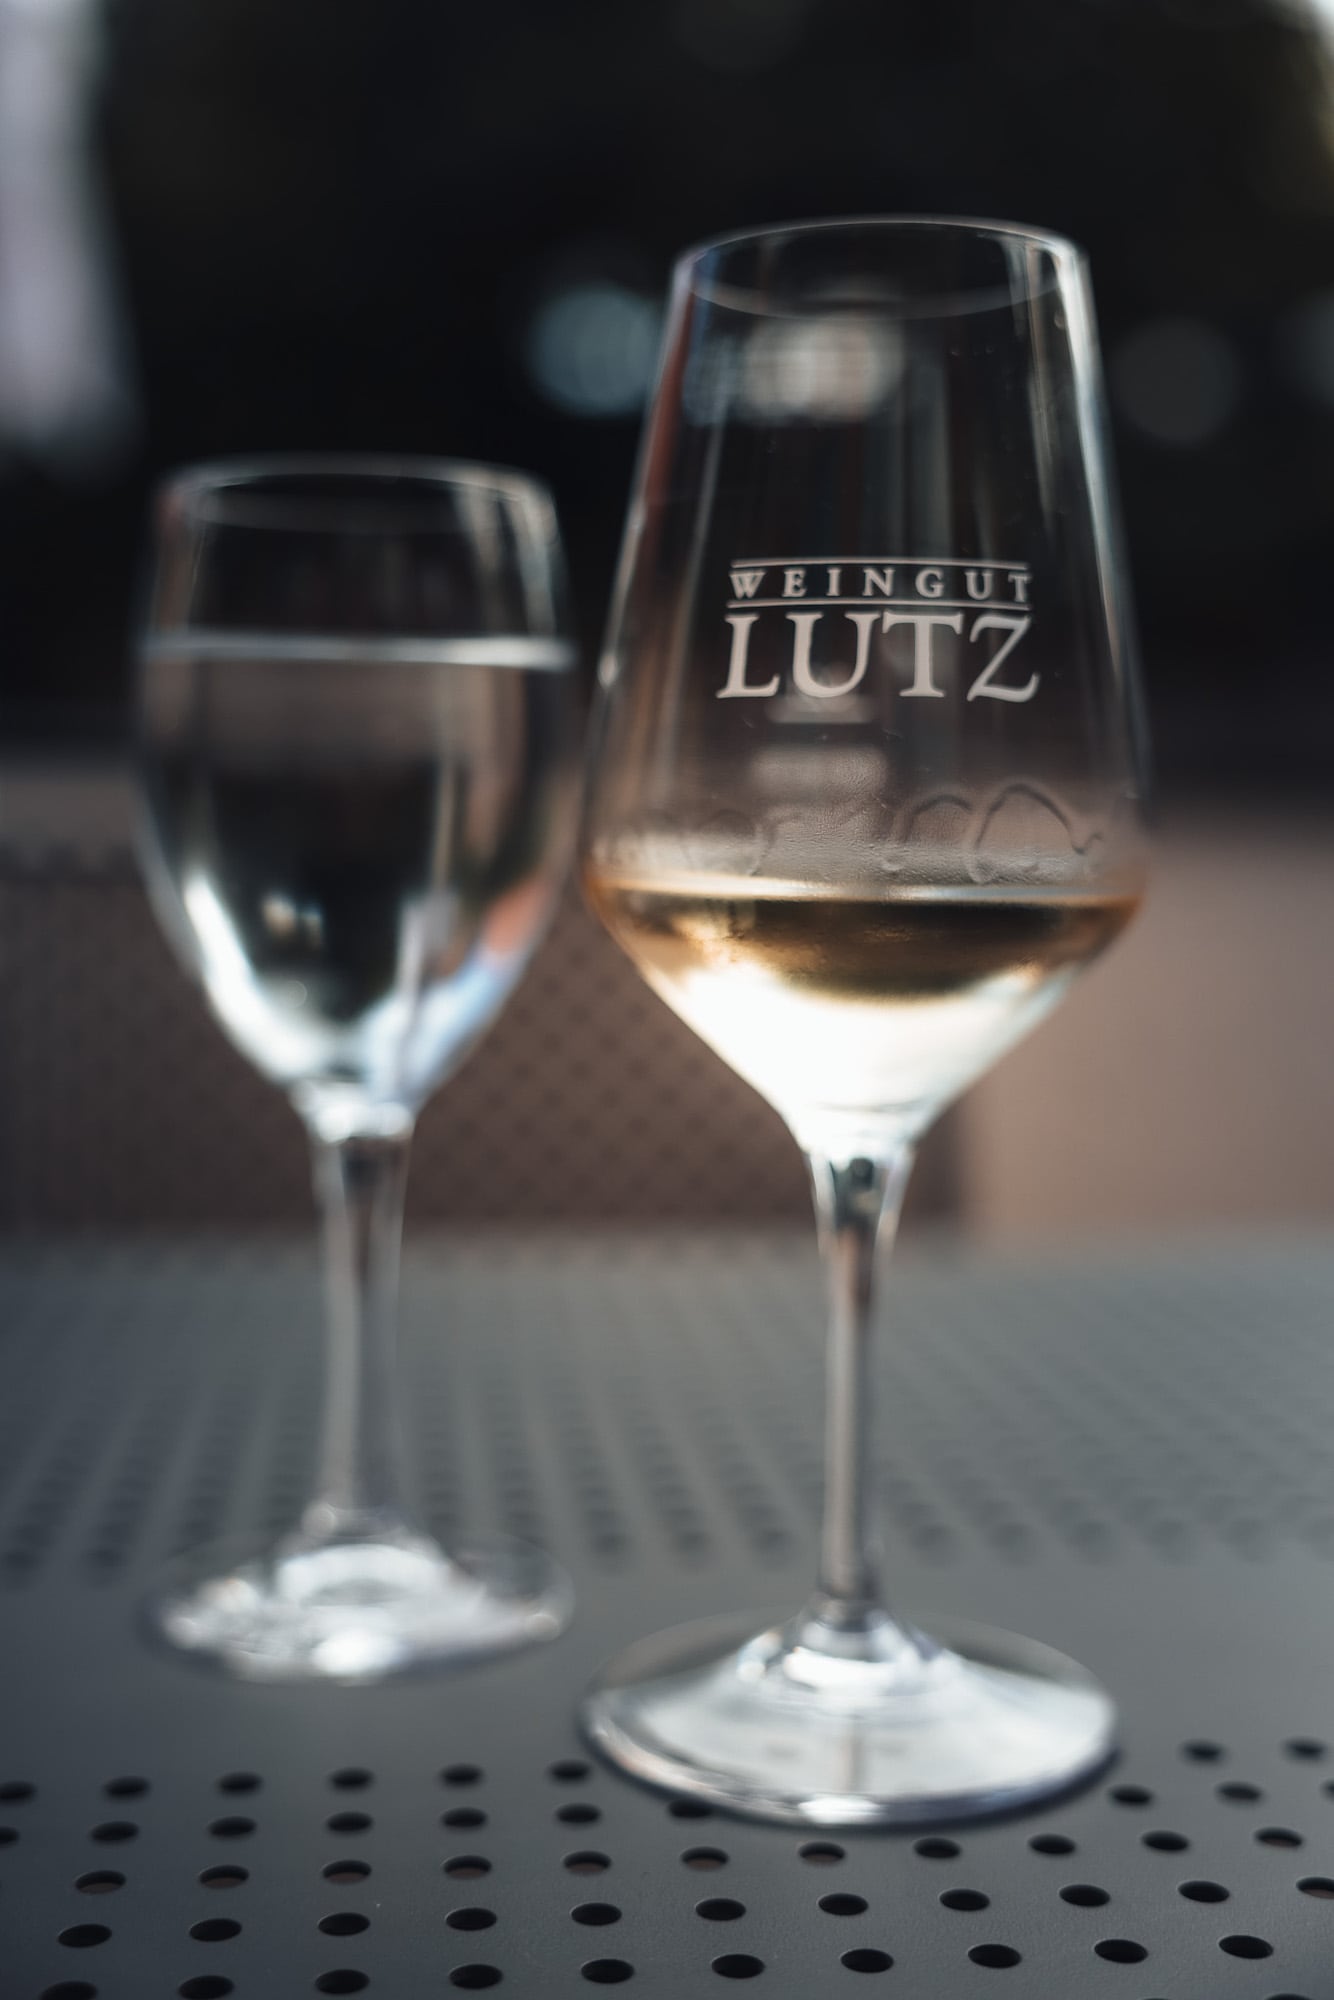 Wein im Weingut Lutz